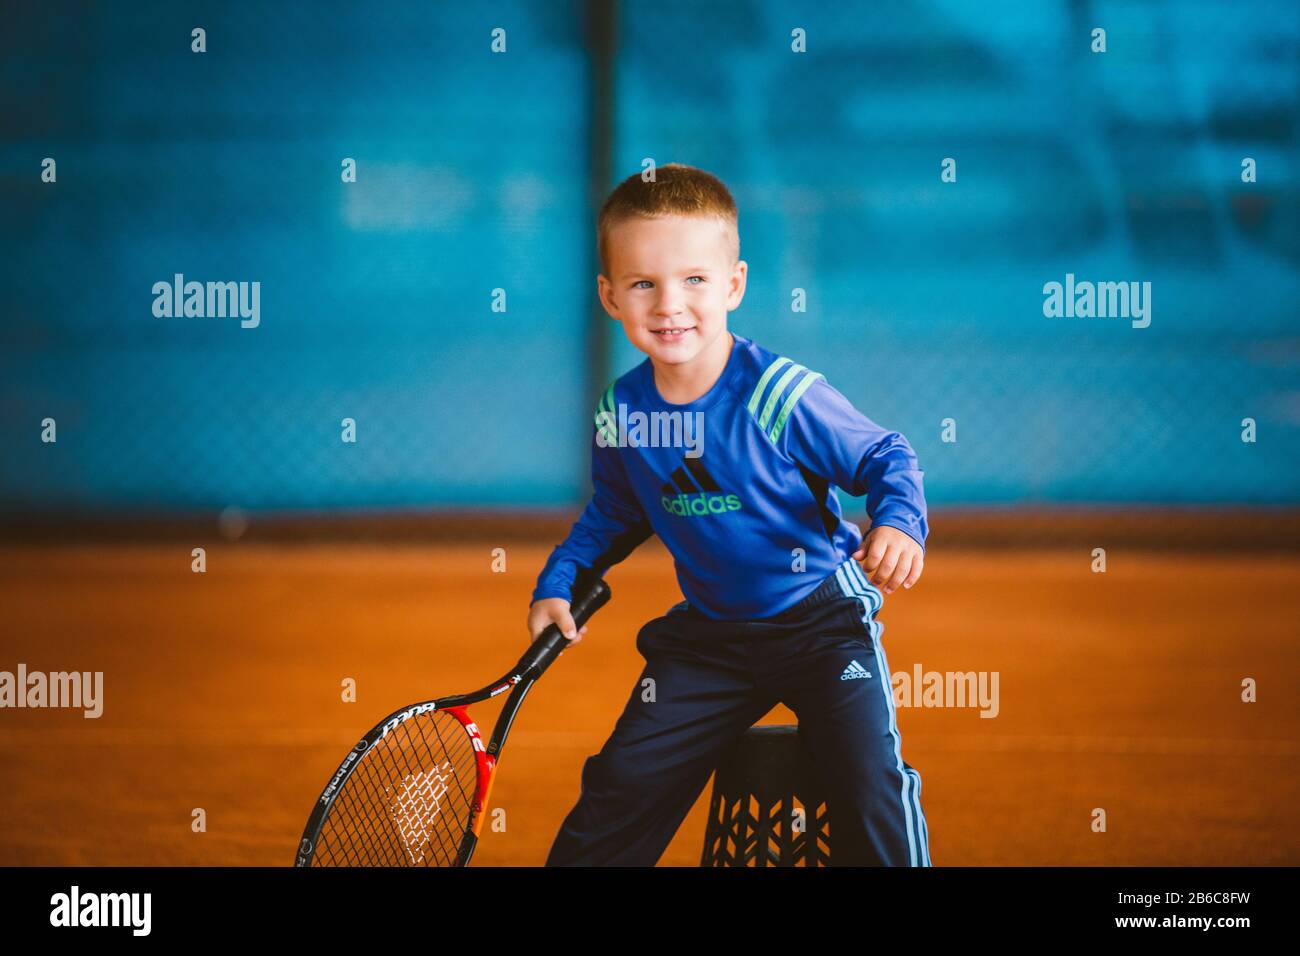 Les enfants jouent au tennis sur le court extérieur. 20 Septembre 2016.  Ukraine, Kiev. Petit tennis super joueur. Enfants vêtements de sport adidas.  Athlète enfant Photo Stock - Alamy